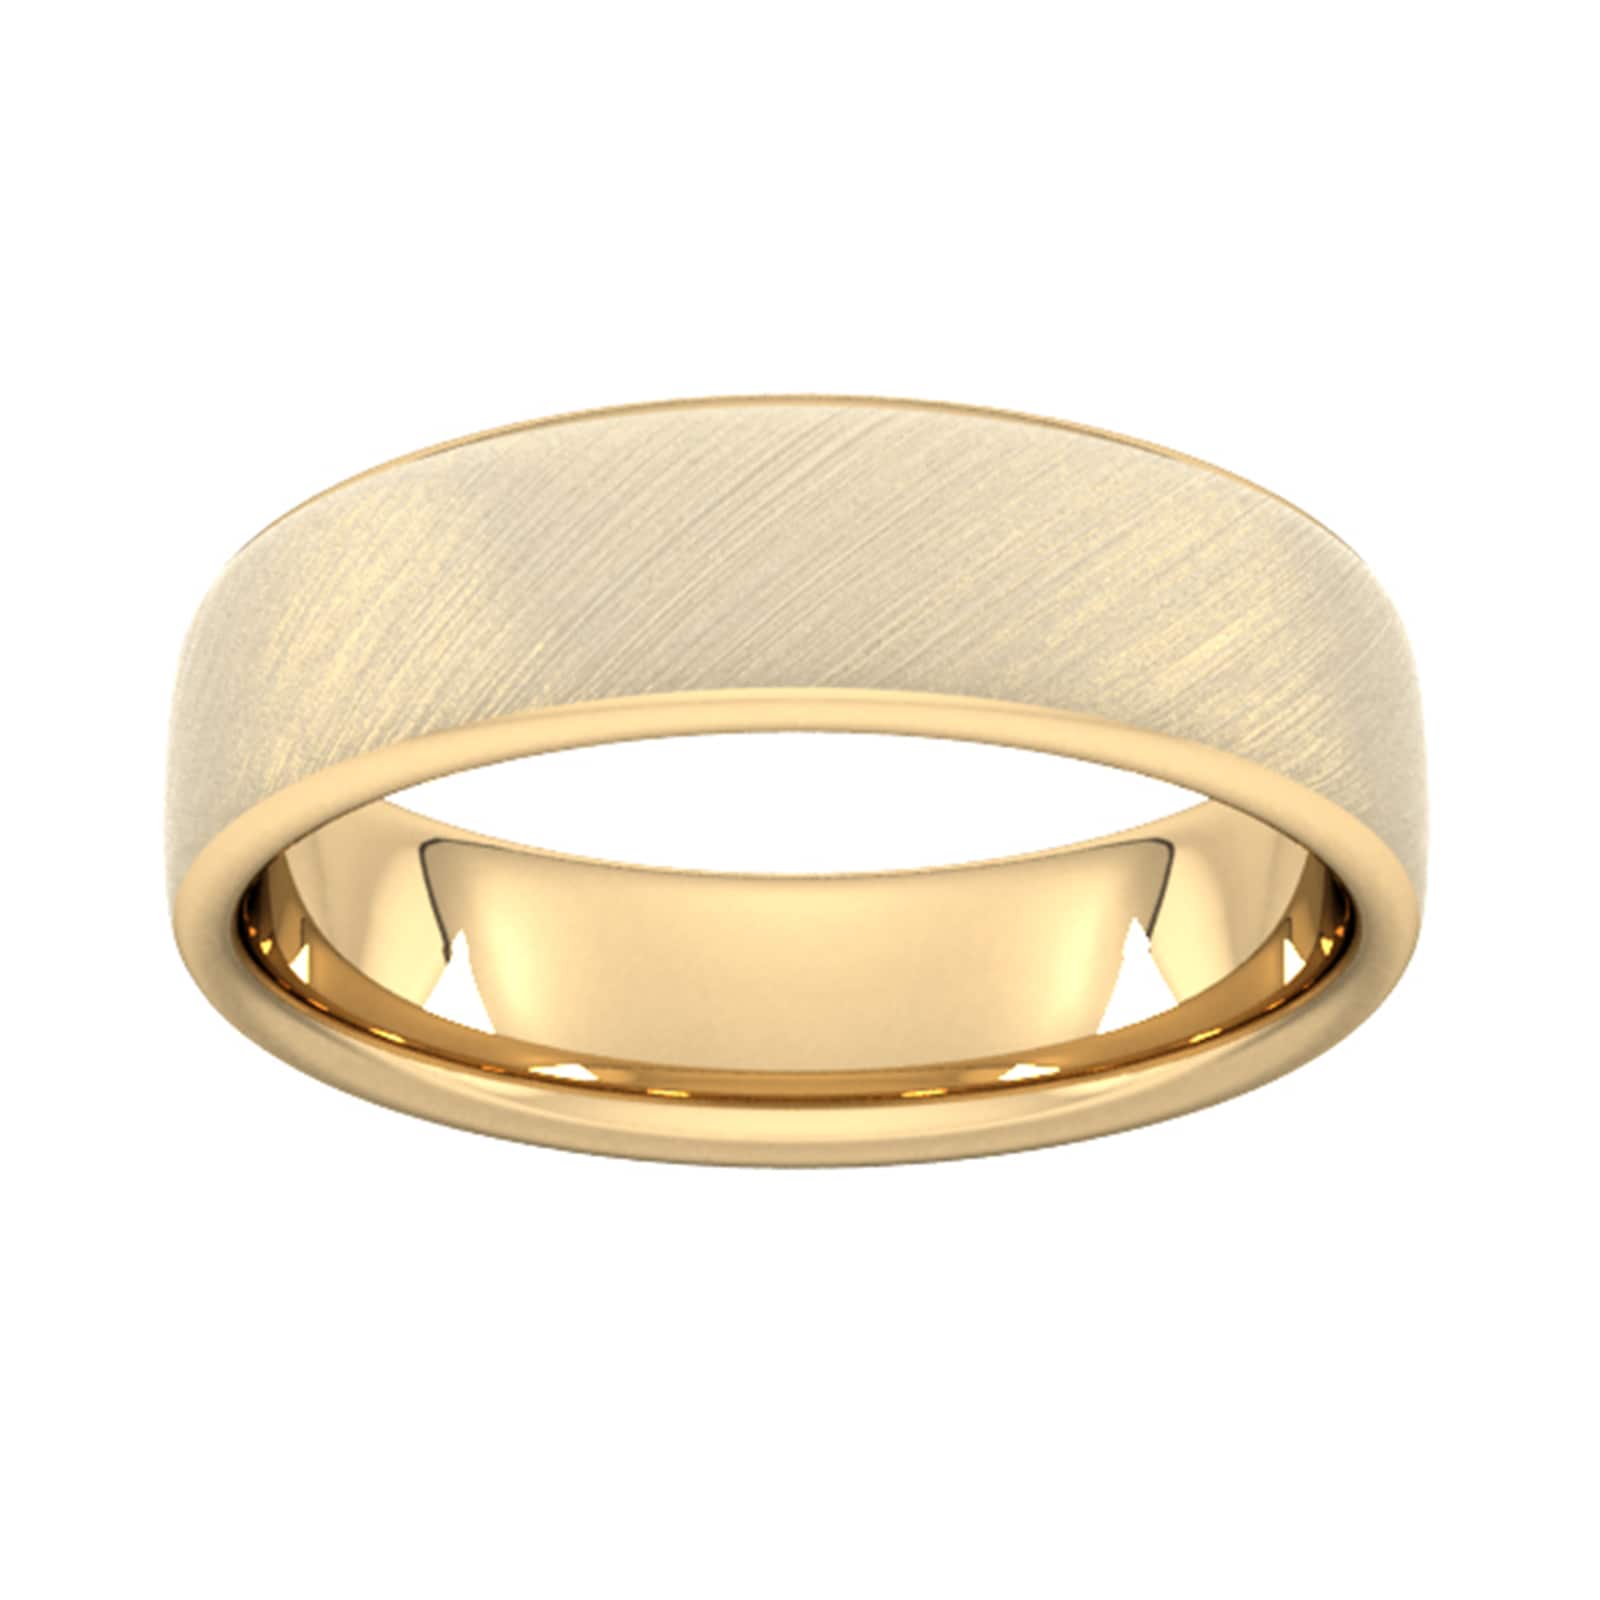 6mm Slight Court Standard Diagonal Matt Finish Wedding Ring In 18 Carat Yellow Gold - Ring Size O